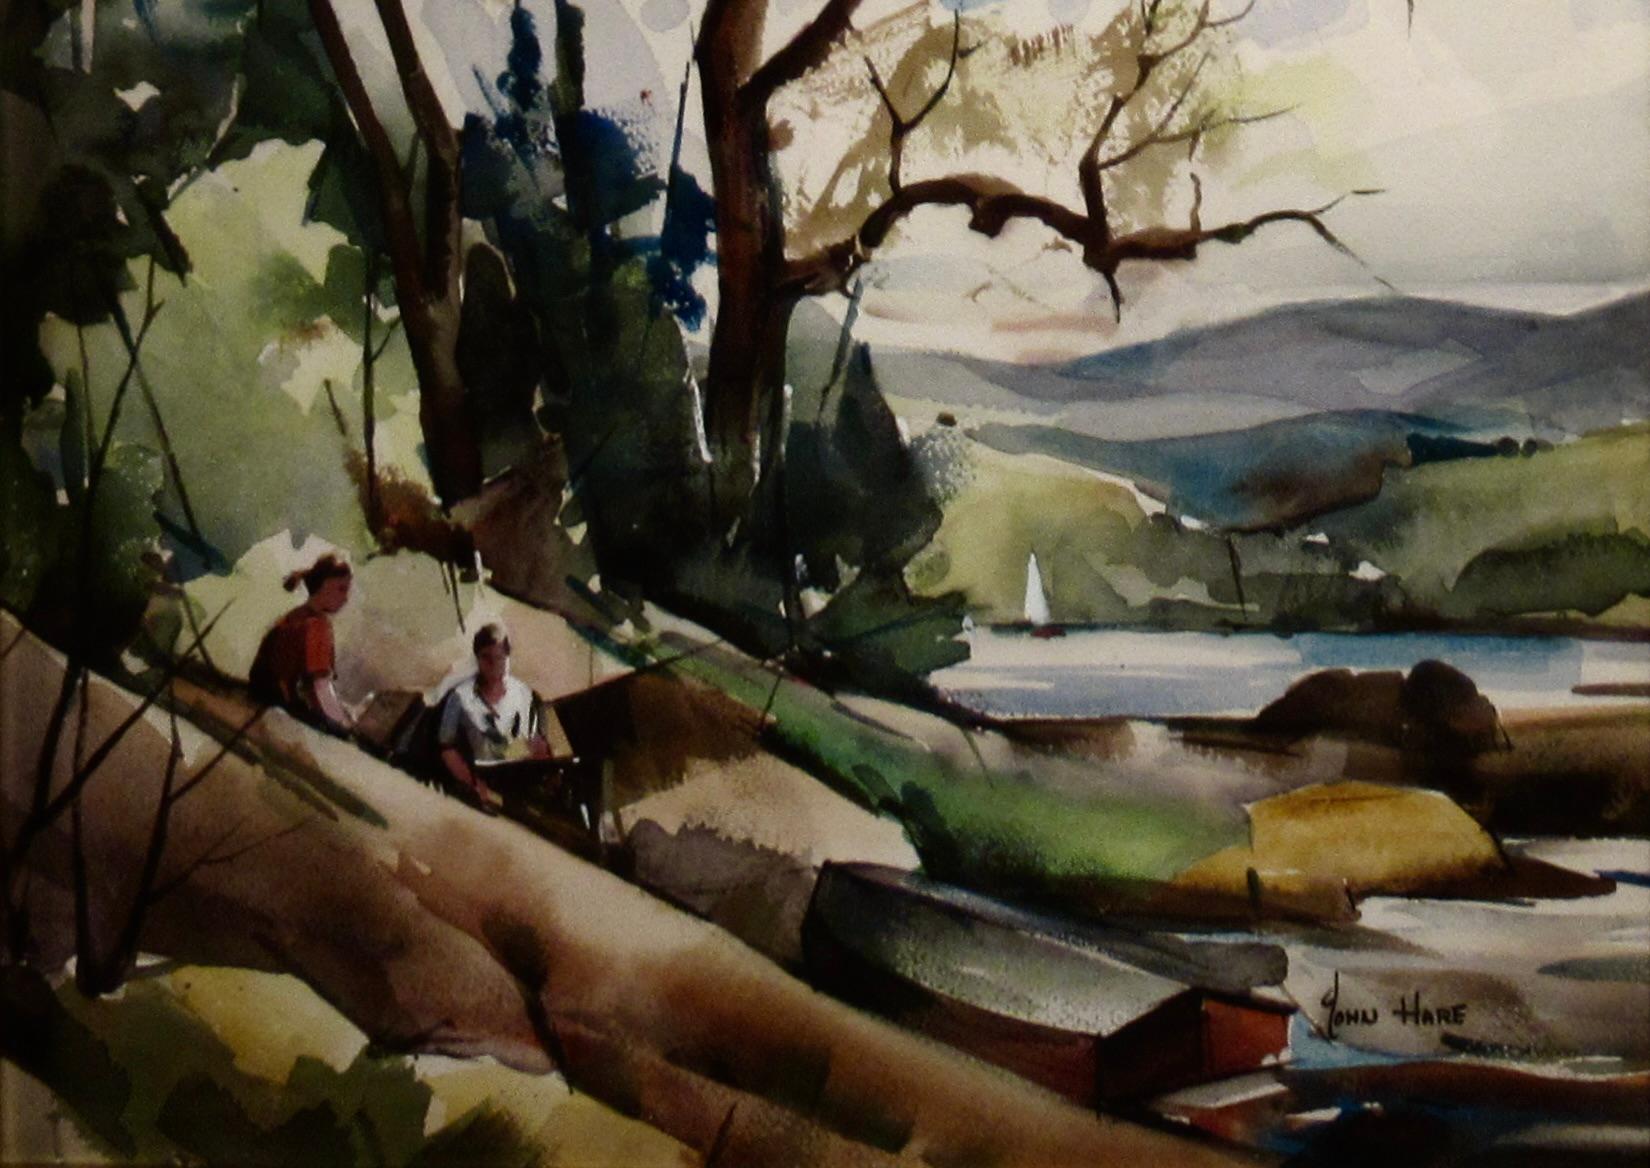 Die Vorbereitungen für das Picknick (Amerikanischer Impressionismus), Art, von John Hare